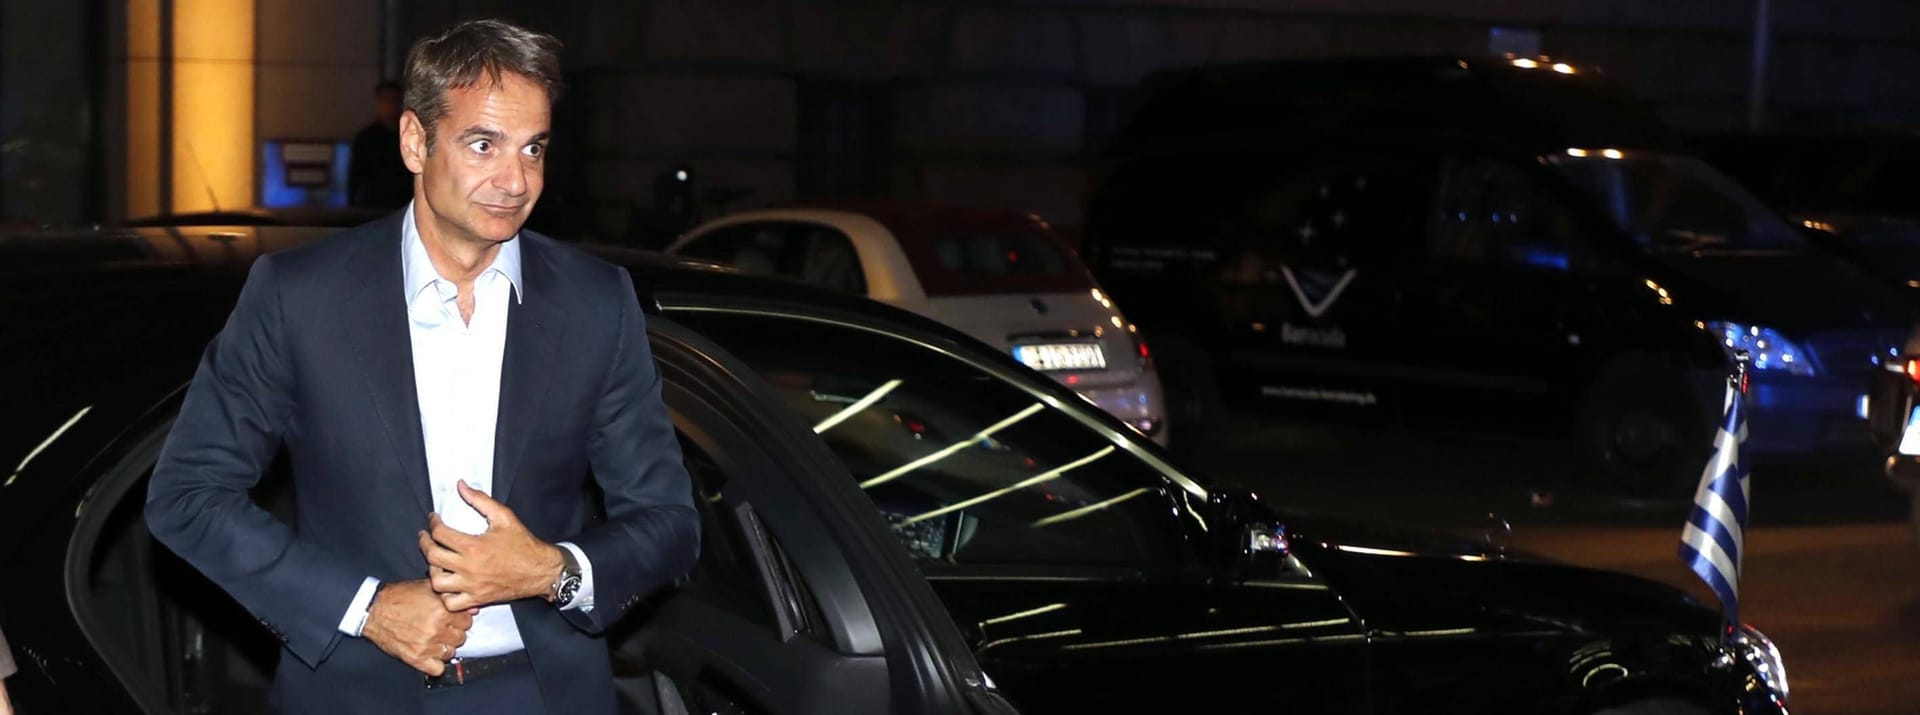 Hier steigt der griechische Ministerpräsident Kyriakos Mitsotakis vor dem Regent aus seiner Staatskarosse. Das Bild wurde 2019 aufgenommen.